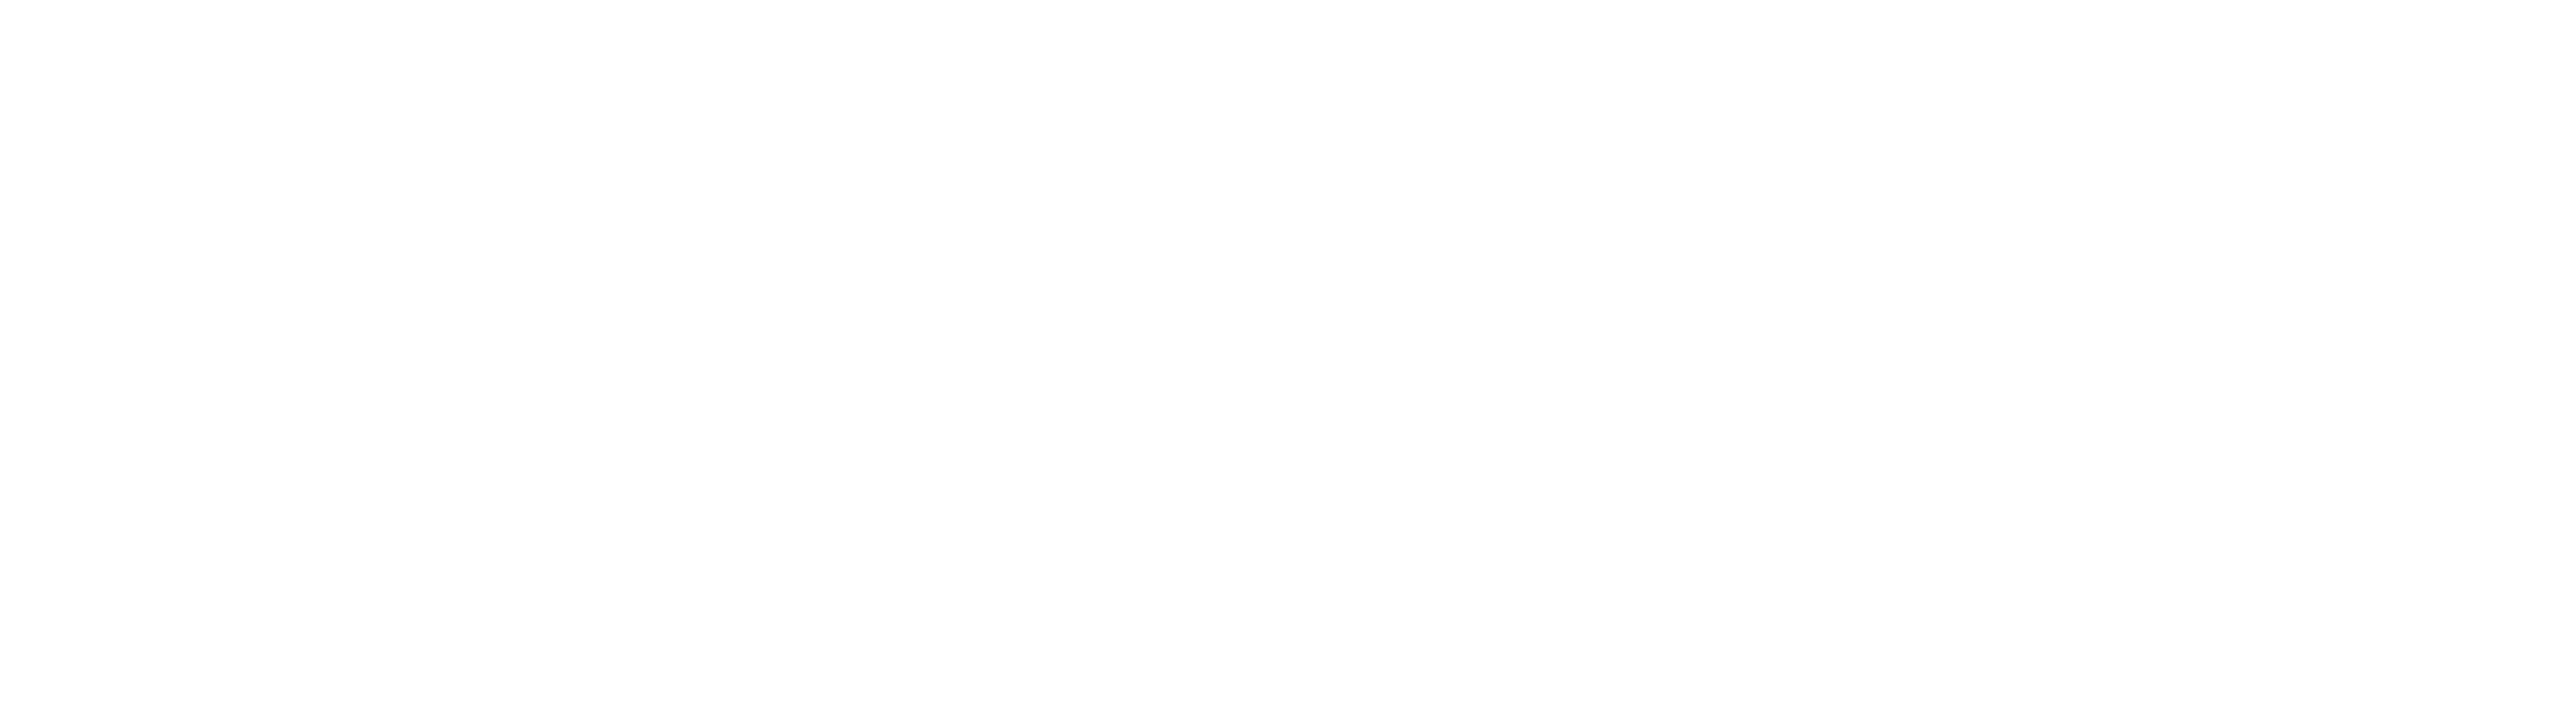 Costco - Logo